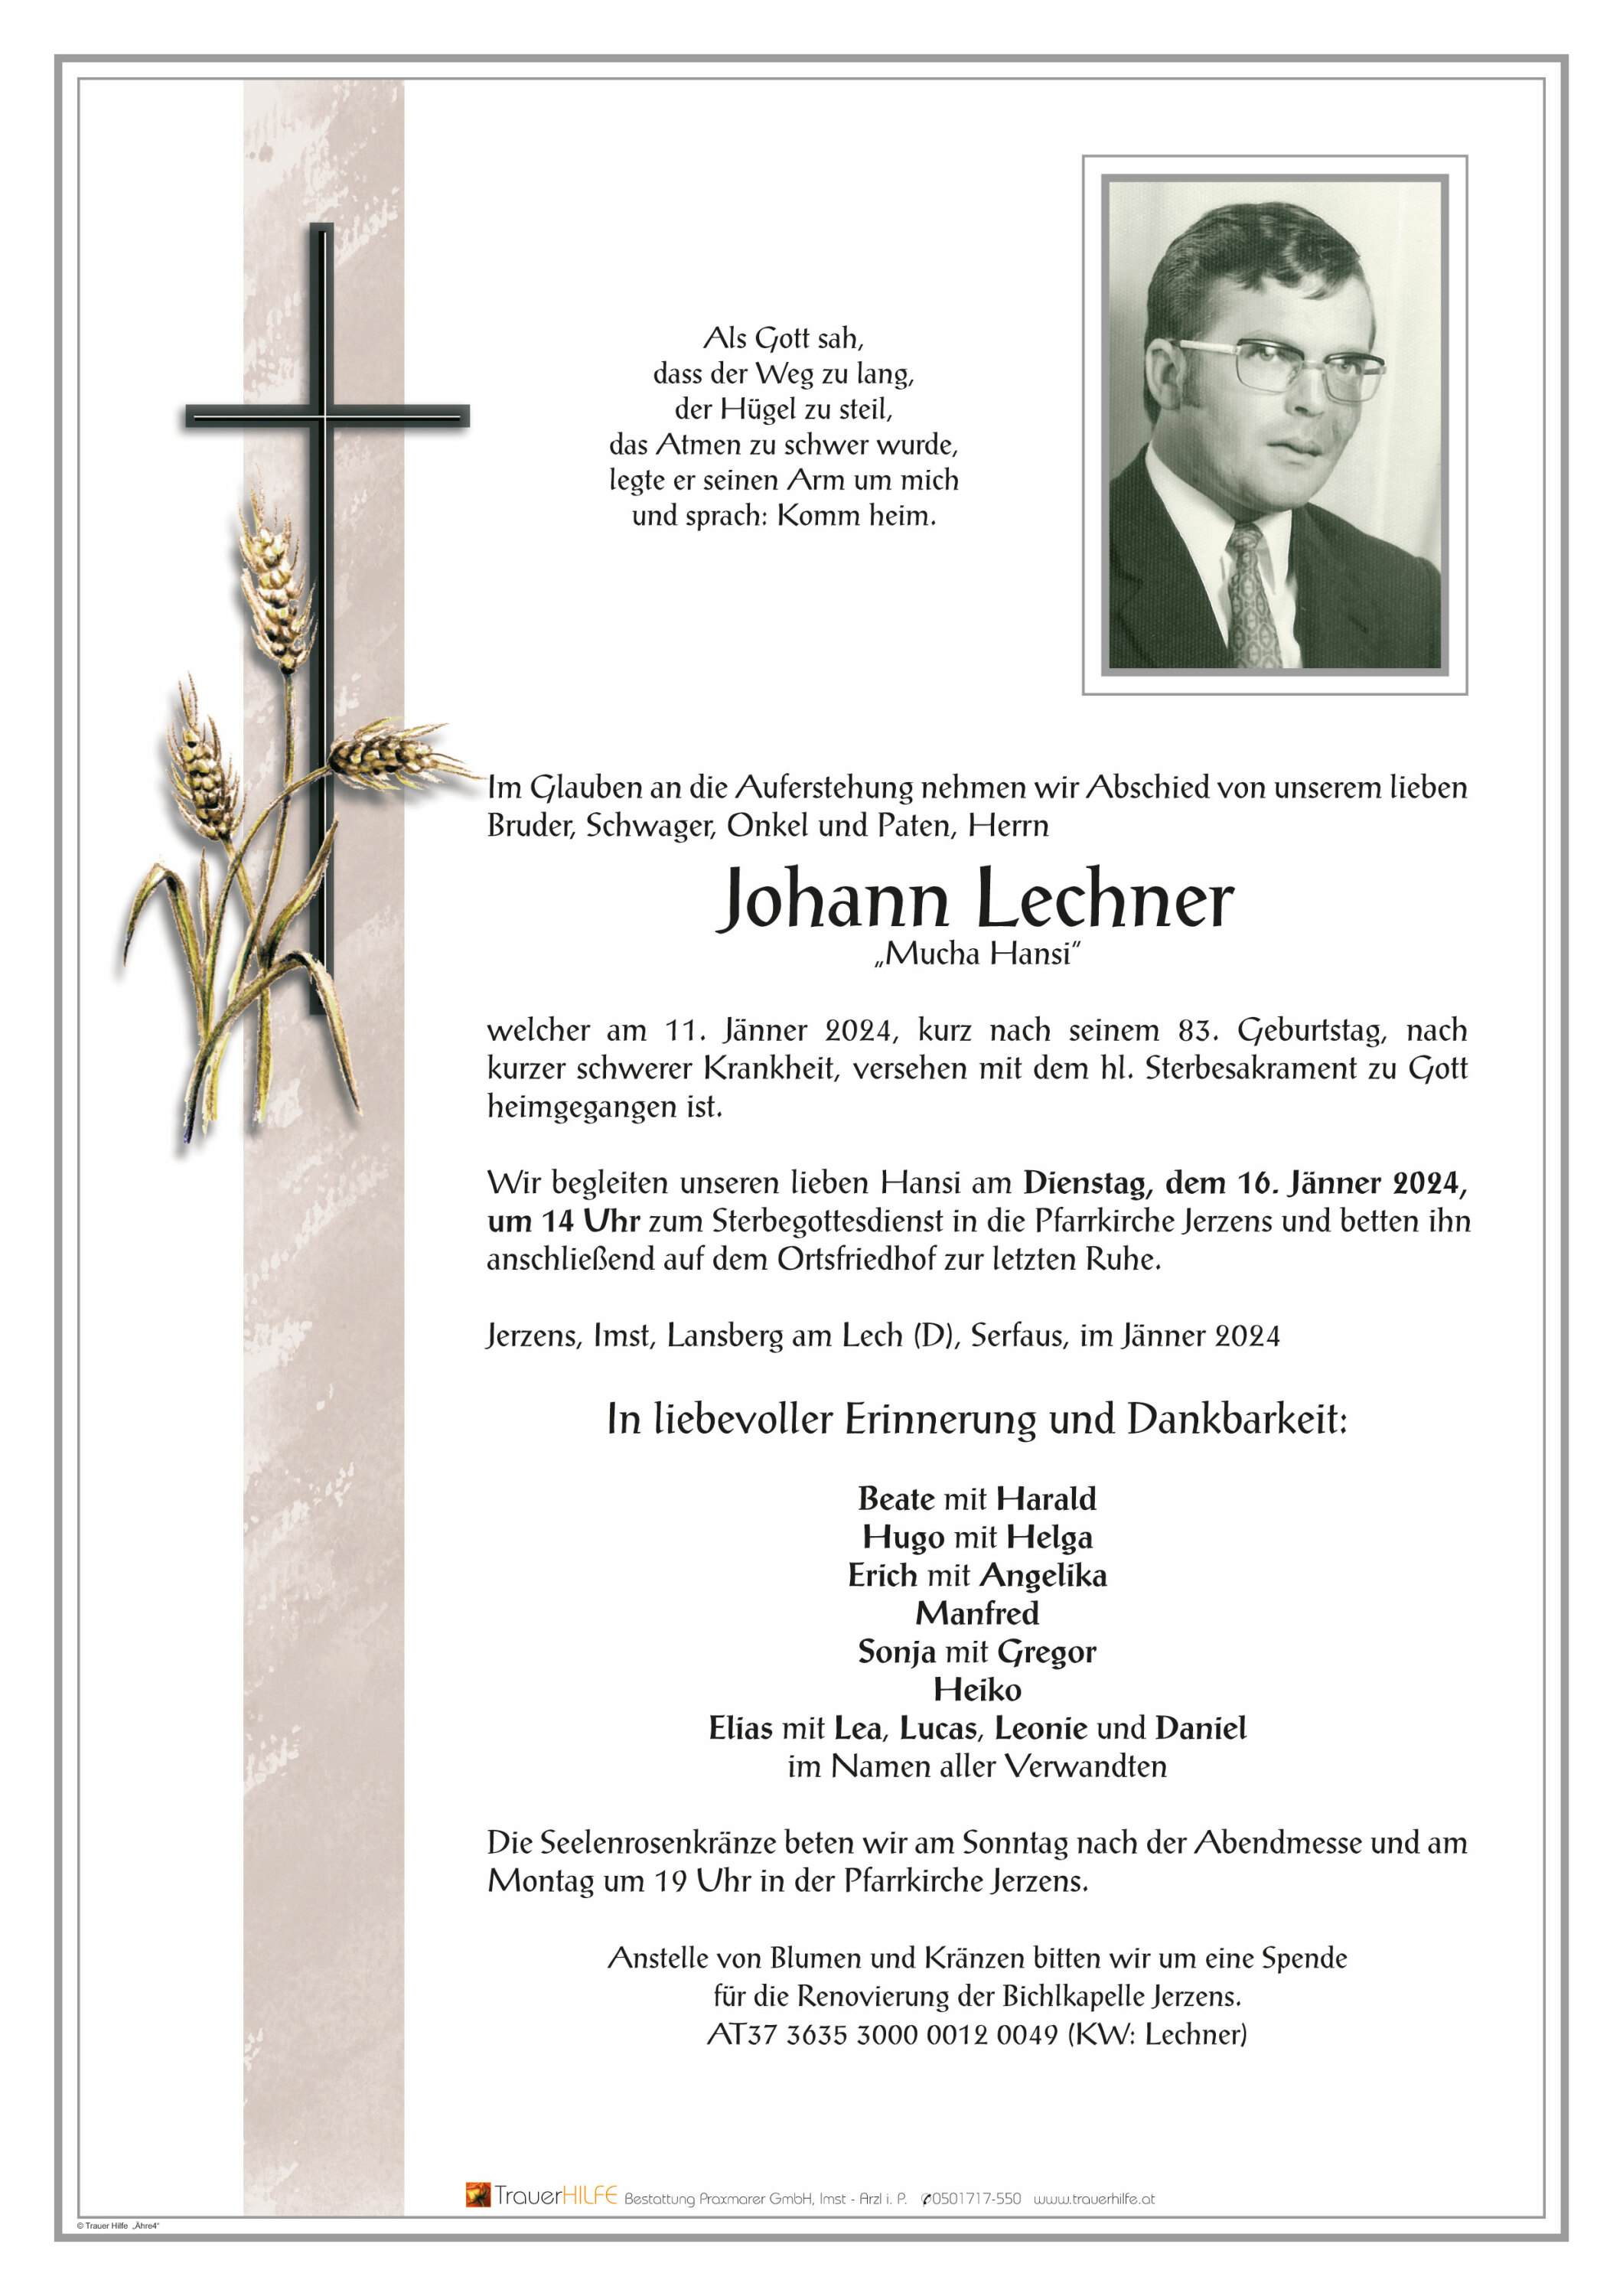 Johann Lechner